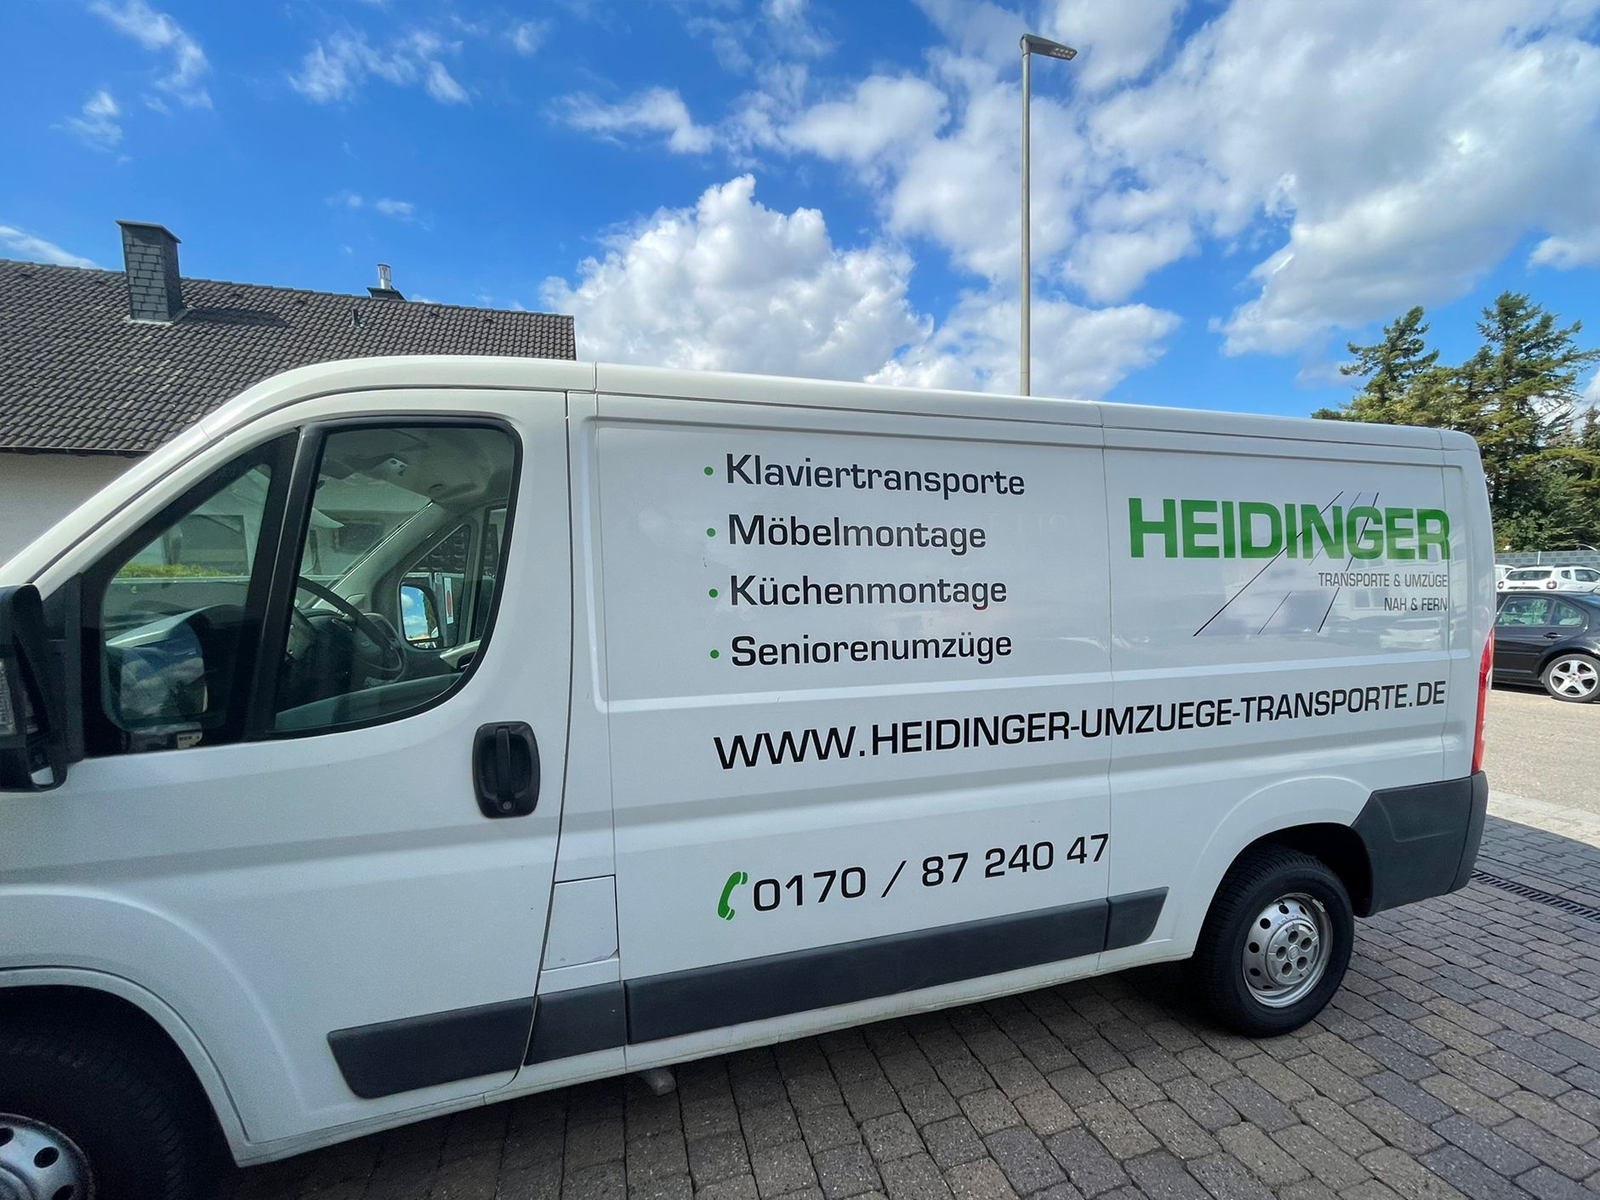 Heisinger Werbetechnik, Ihre Agentur für Werbung aus Neustadt a. d. W. und Frankenthal